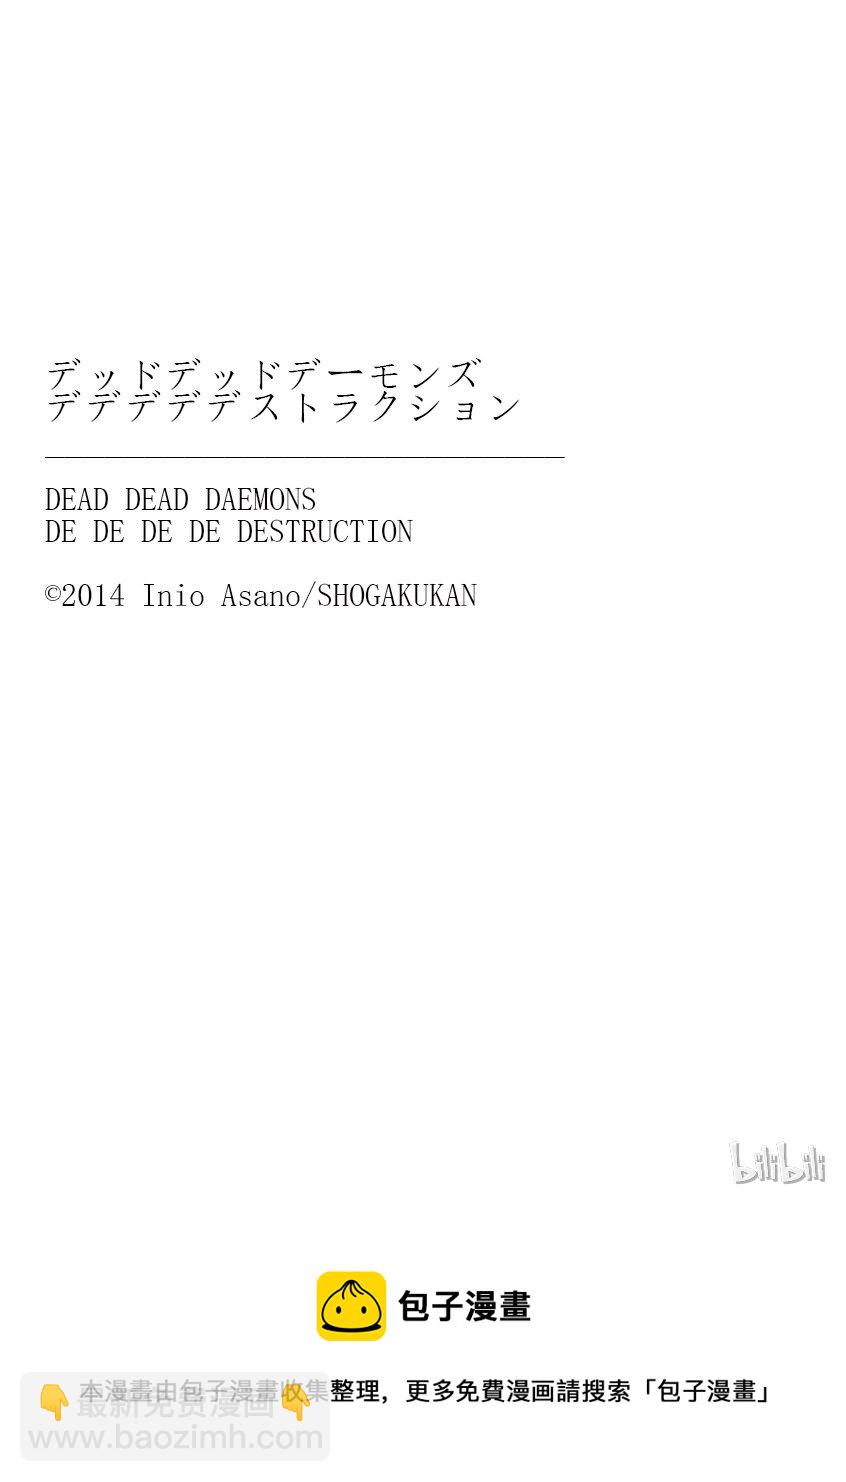 惡魔的破壞 DEAD DEAD DEMON'S DEDEDEDE DESTRUCTION - 005 - 3